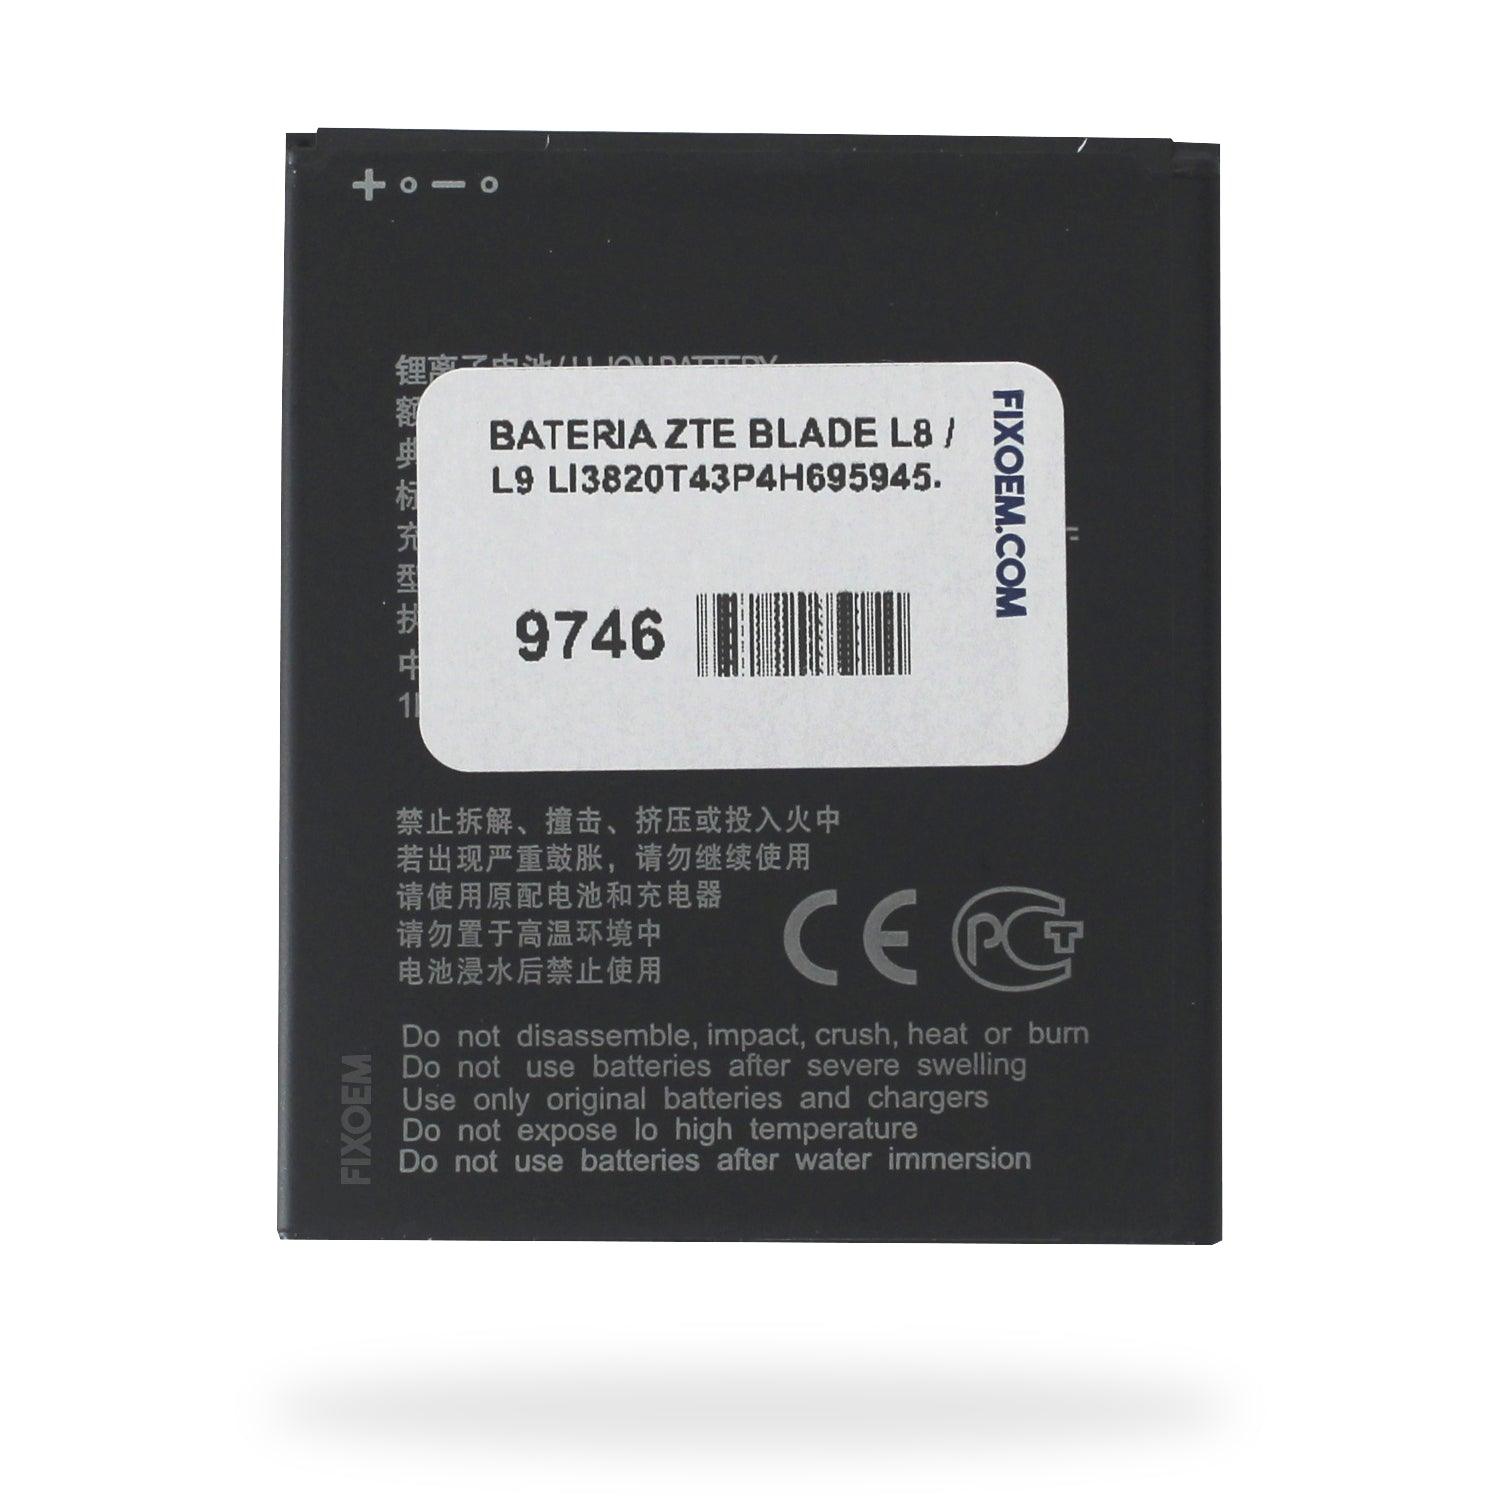 Bateria Zte Blade L8 / L9 Li3820T43P4H695945. a solo $ 100.00 Refaccion y puestos celulares, refurbish y microelectronica.- FixOEM